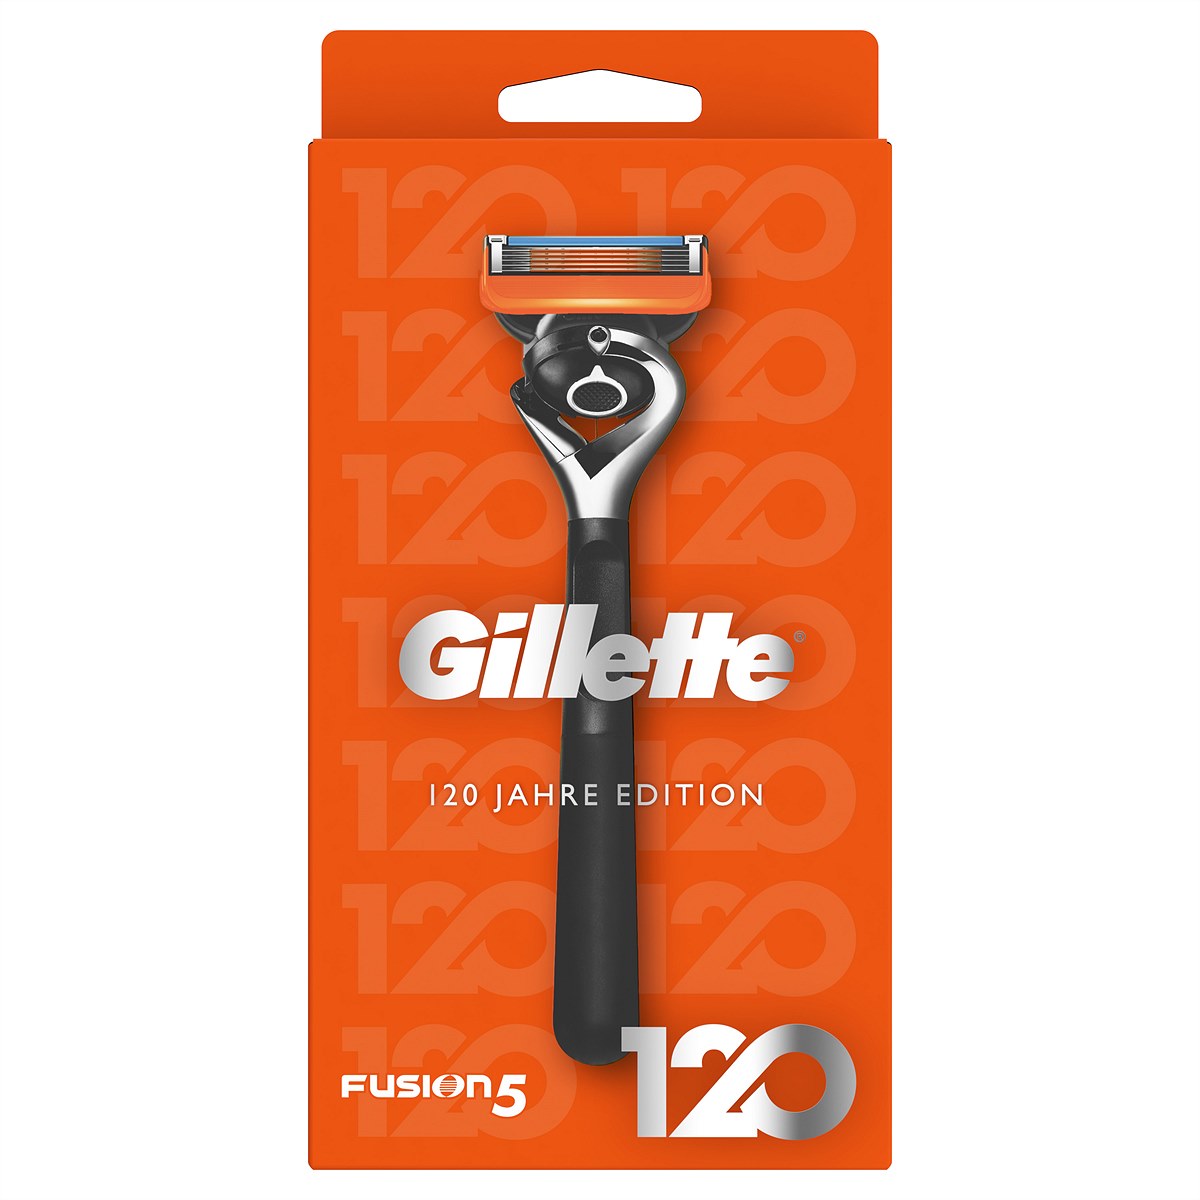 Der Gillette Fusion5 ist ab Mitte September in der Sonderedition um EUR 8,99 (UVP) im Handel erhältlich